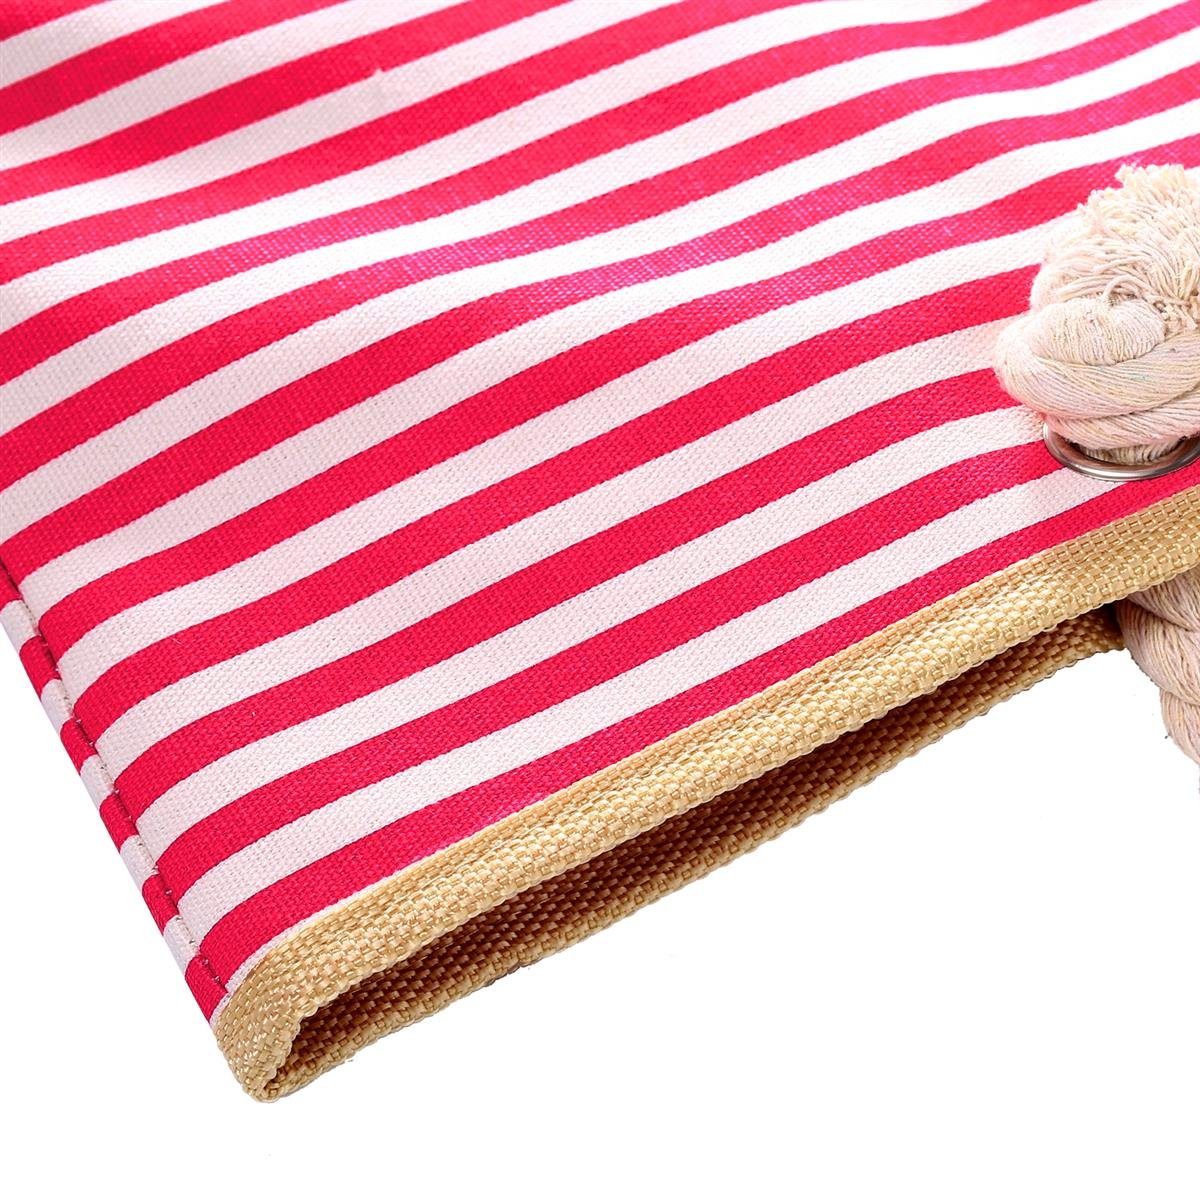 rot-weiß 2 Tasche inkl. Strandtasche DonDon Reißverschluss, mit wasserabweisende Strandtasche, Shopper gestreift (2-tlg), Große kleinem Beutel